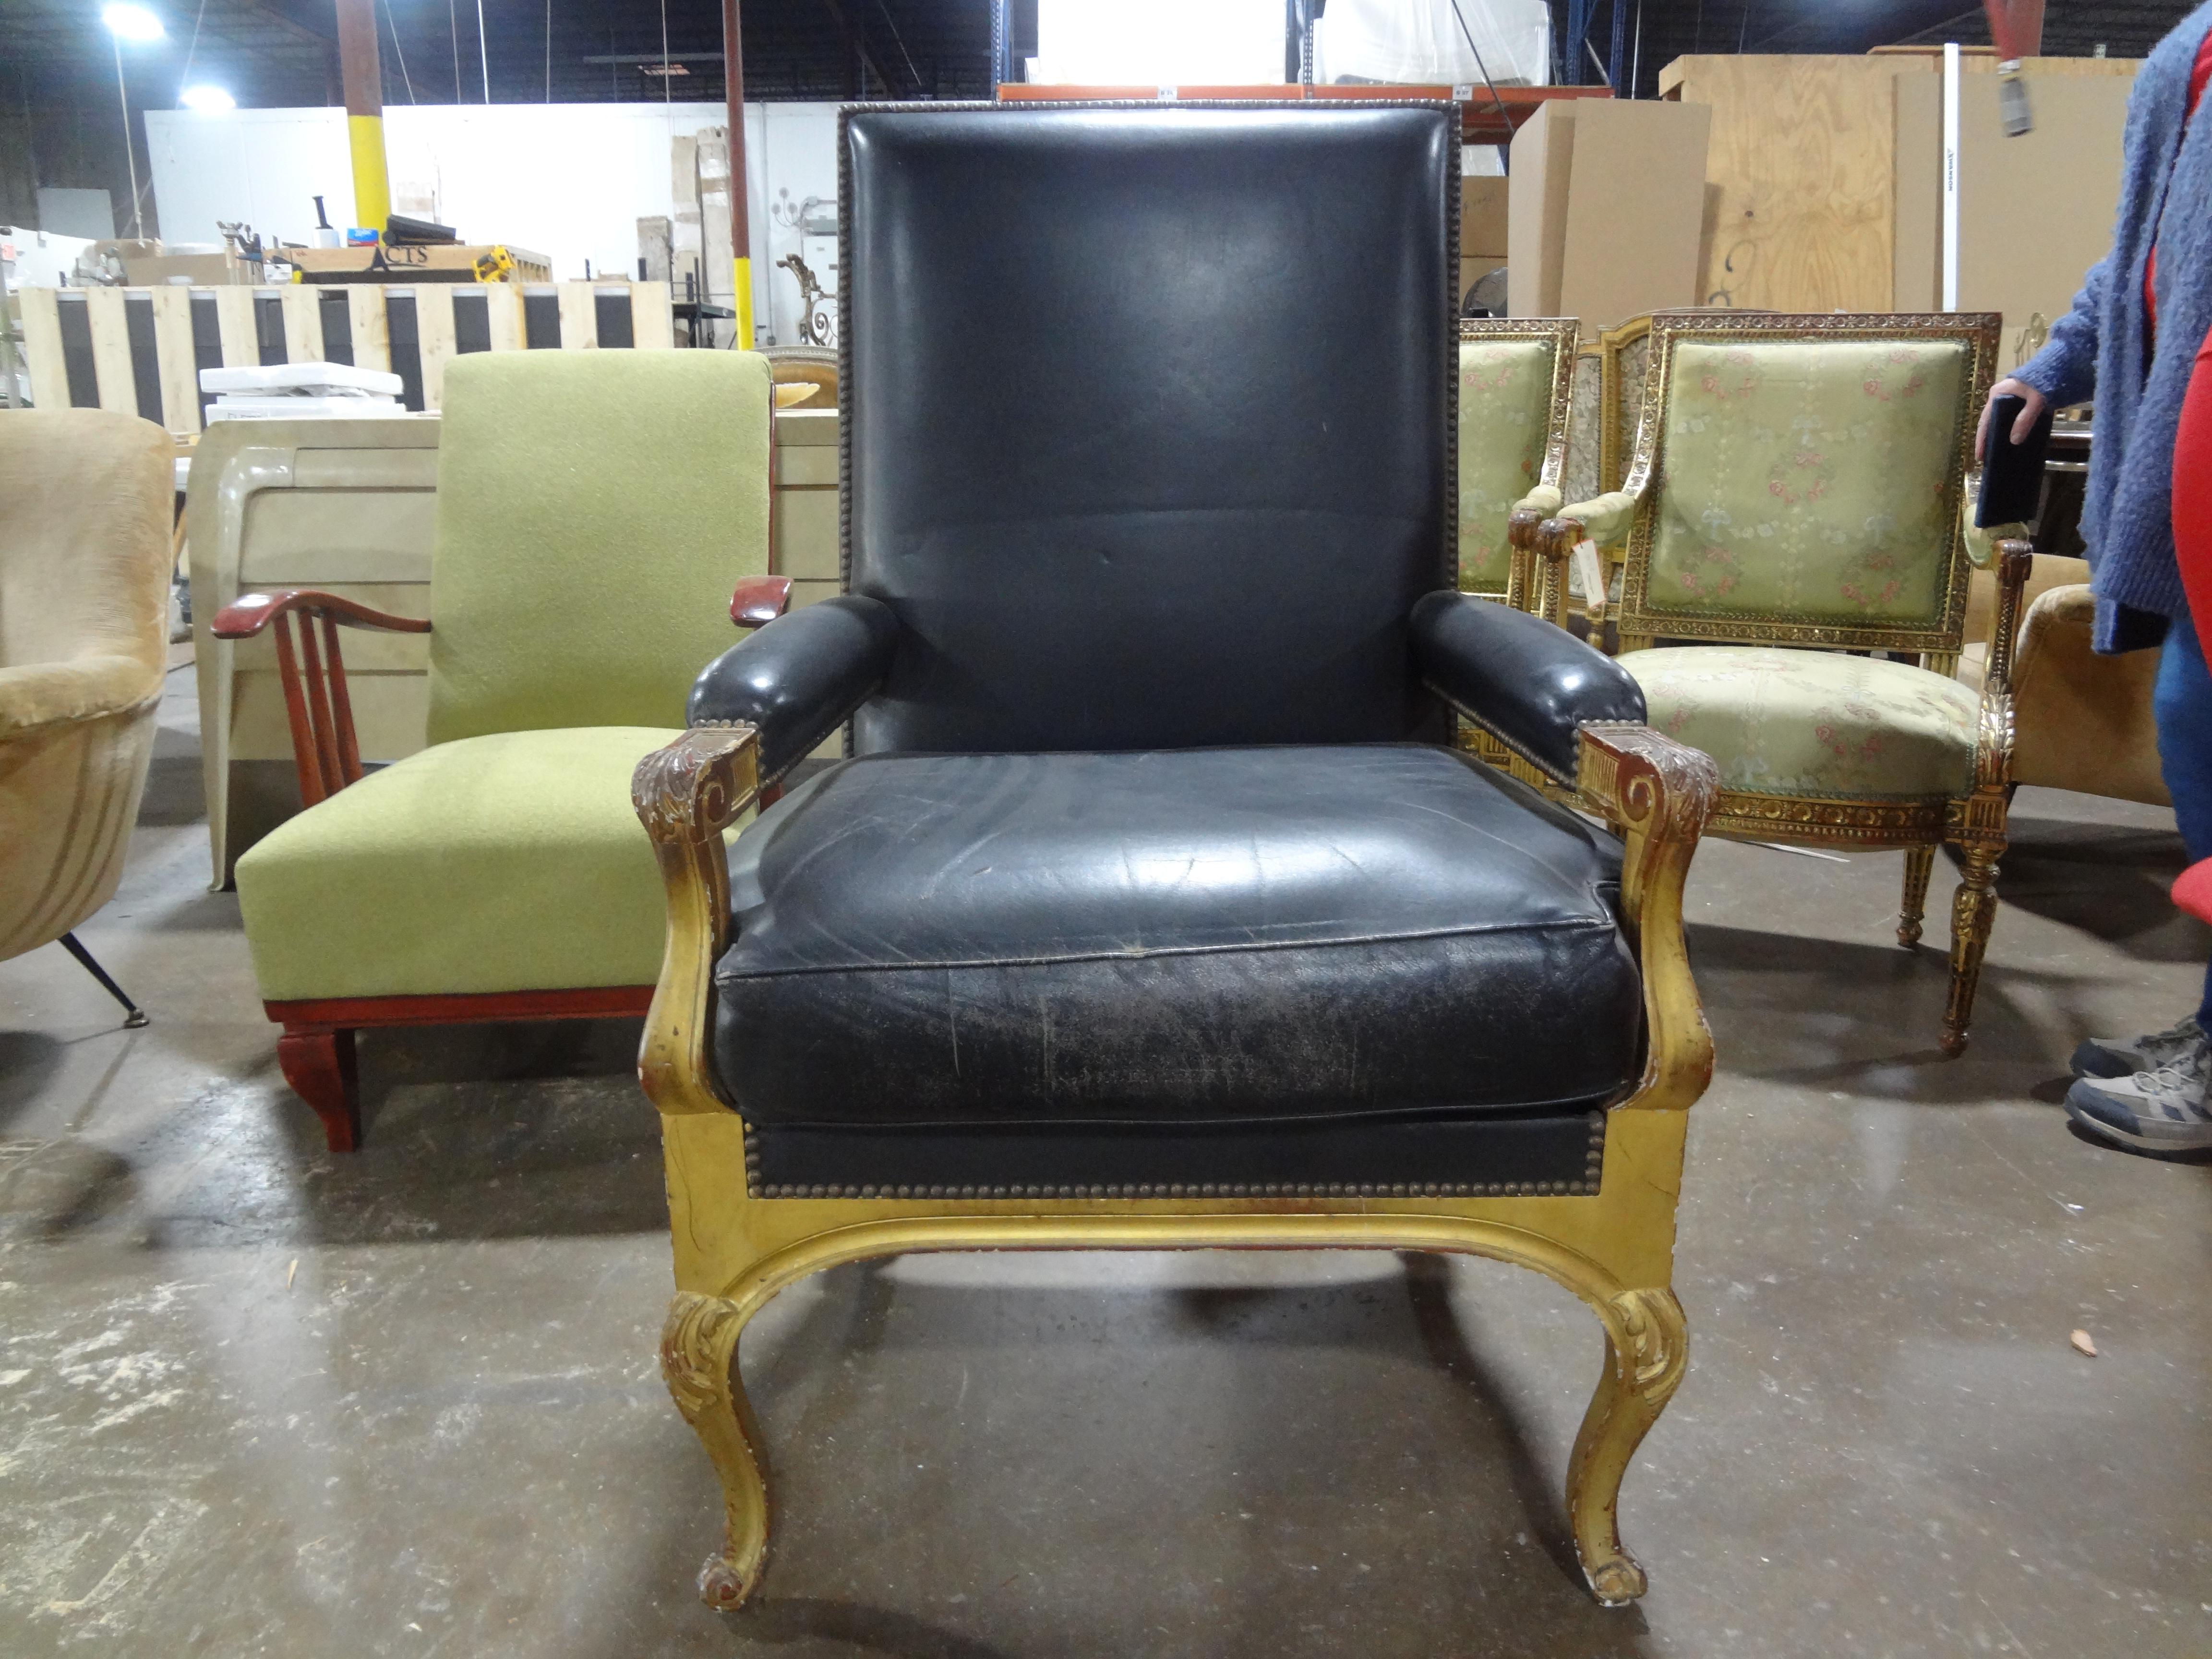 Fauteuil en bois doré de style Louis XVI de la Maison Maison Jansen.
Notre beau fauteuil en bois doré de style Louis XVI est recouvert de cuir noir vieilli et constitue la chaise d'appoint ou de bureau idéale.  Chaise idéale pour une personne de